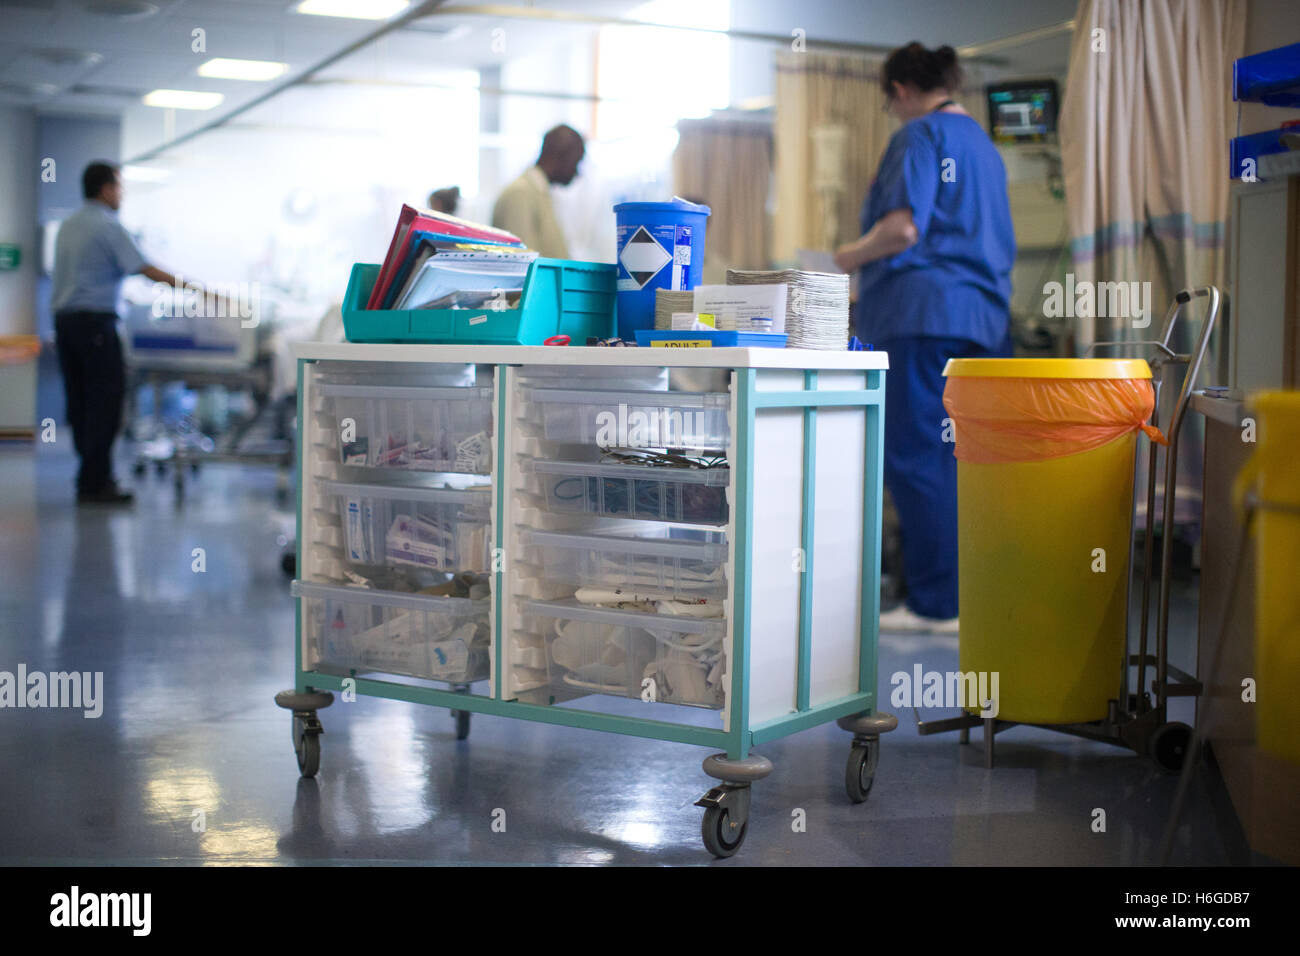 Fotografia del carrello di farmaci in un ospedale con i pazienti e il personale in background Foto Stock